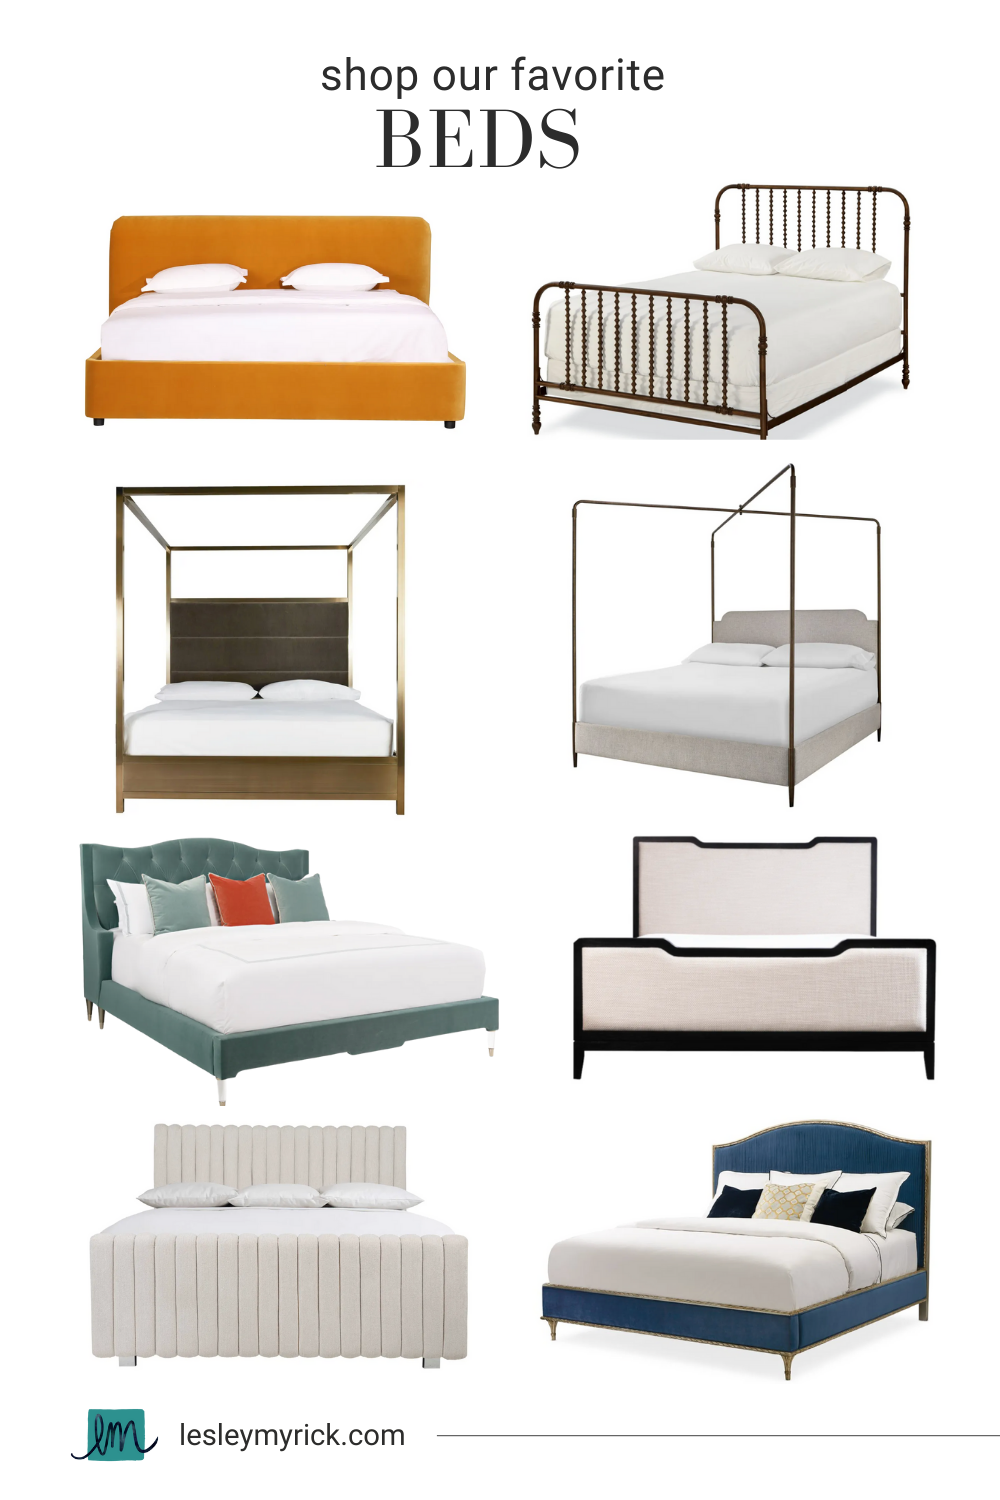 Shop interior designer Lesley Myrick's favorite beds.